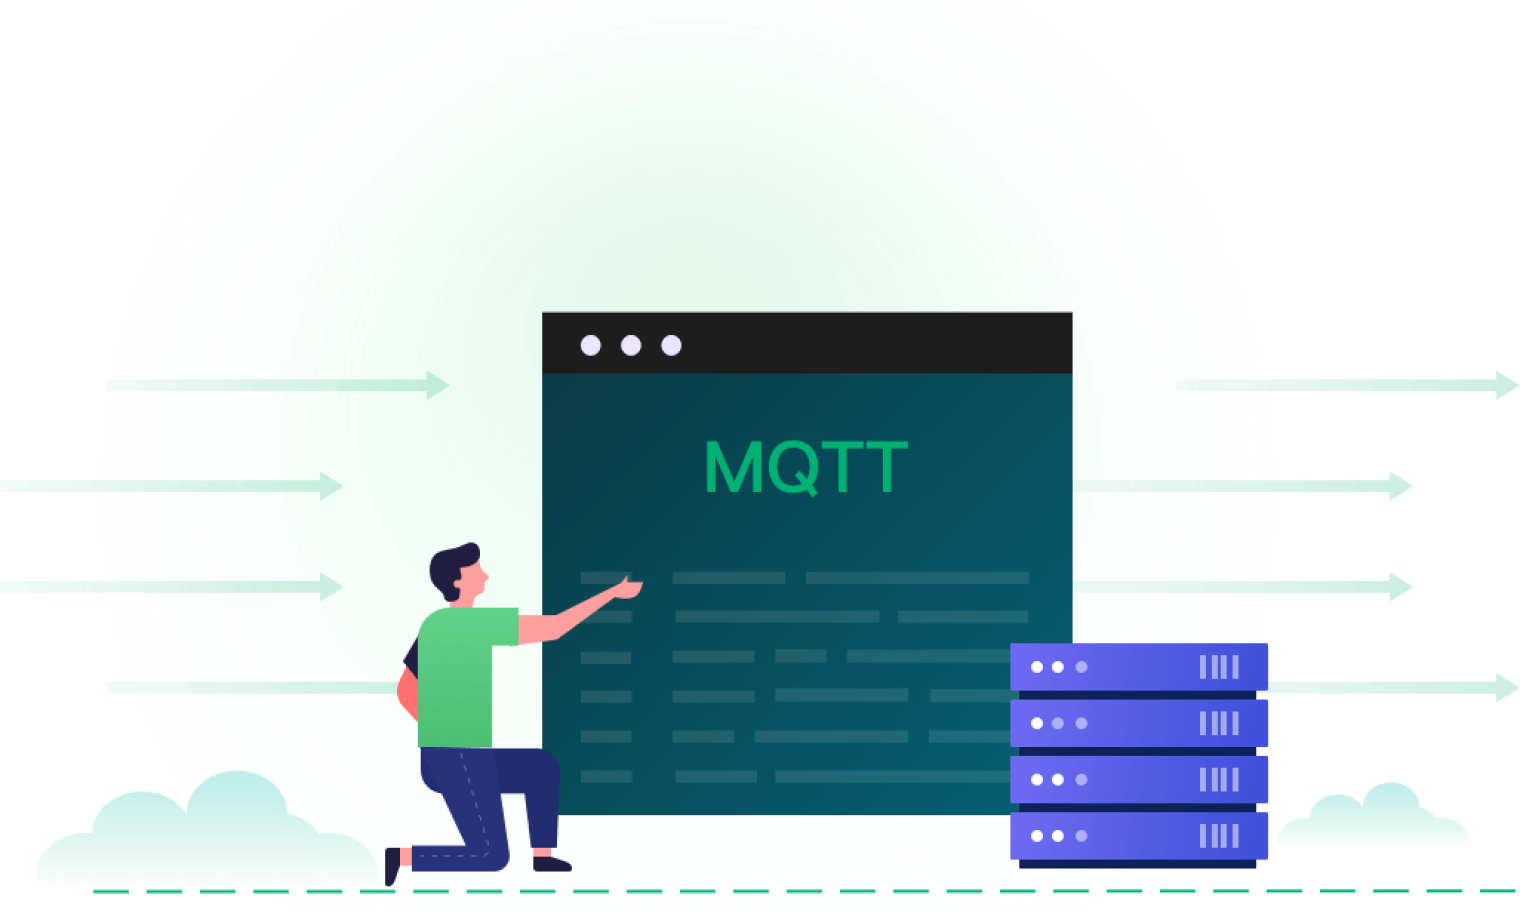 MQTT 5.0